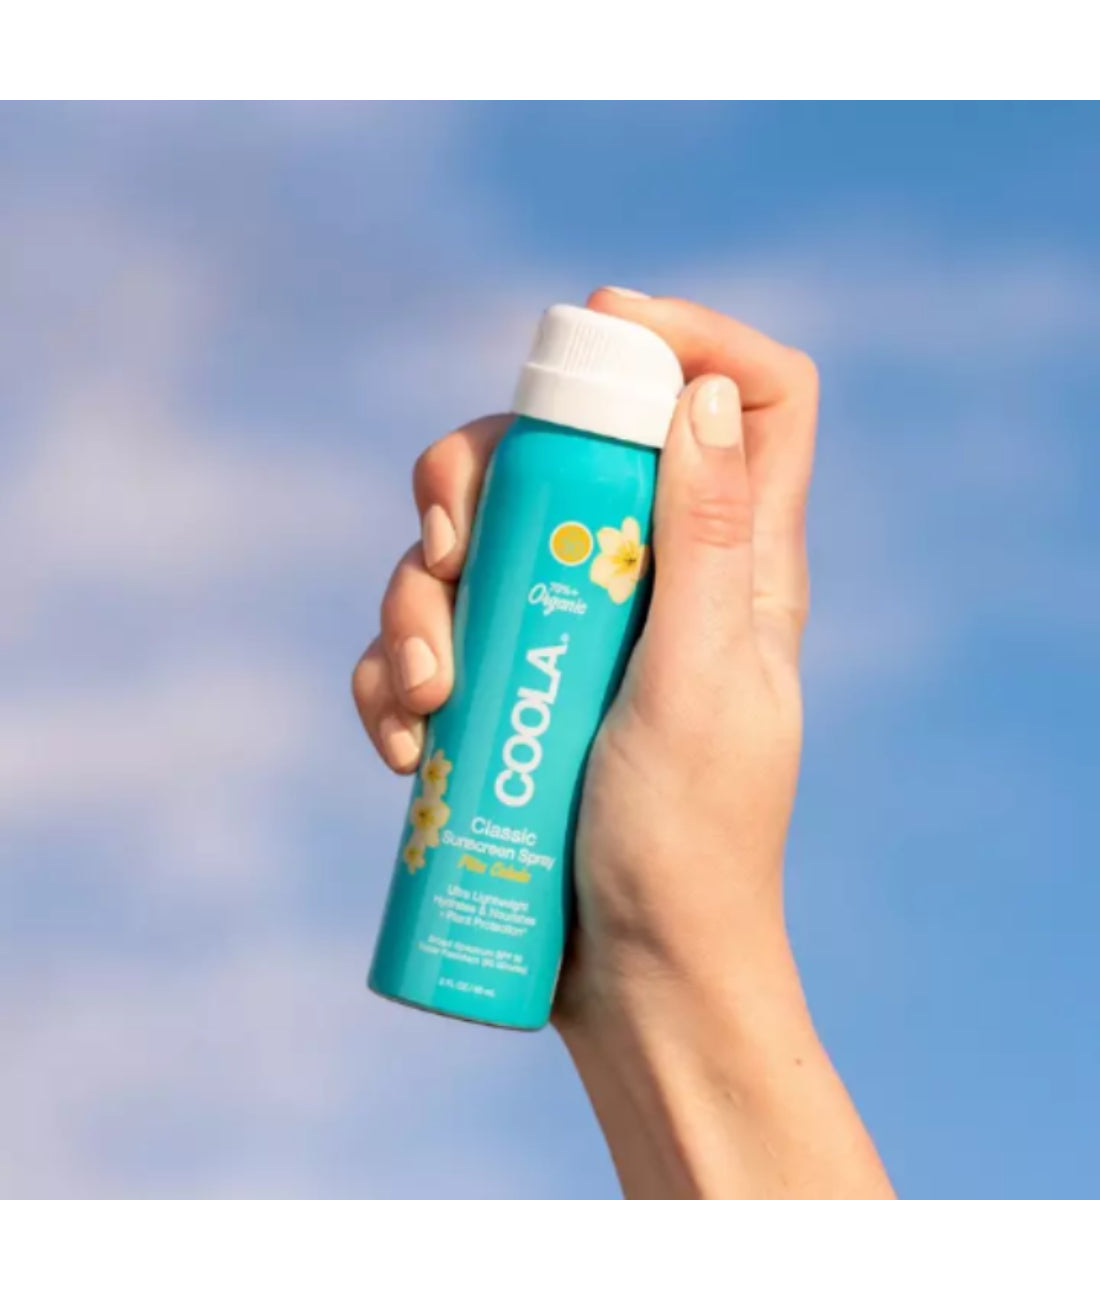 Coola Travel Classic Body Organic Sunscreen Spray SPF 30 - Piña Colada